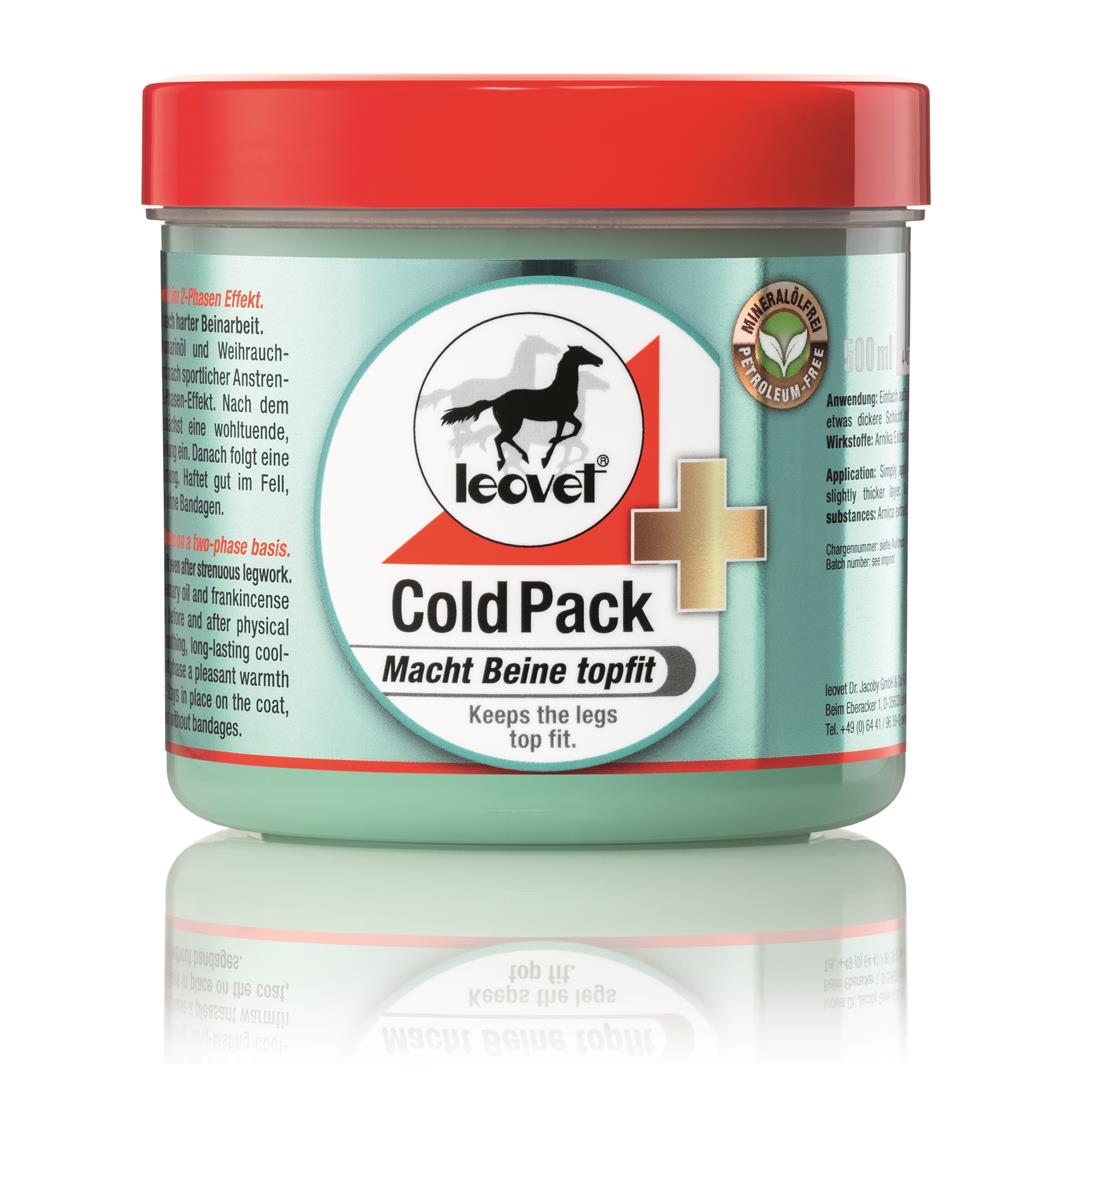 Leovet Cold Pack Apothekers Pferdesalbe, 500 ml